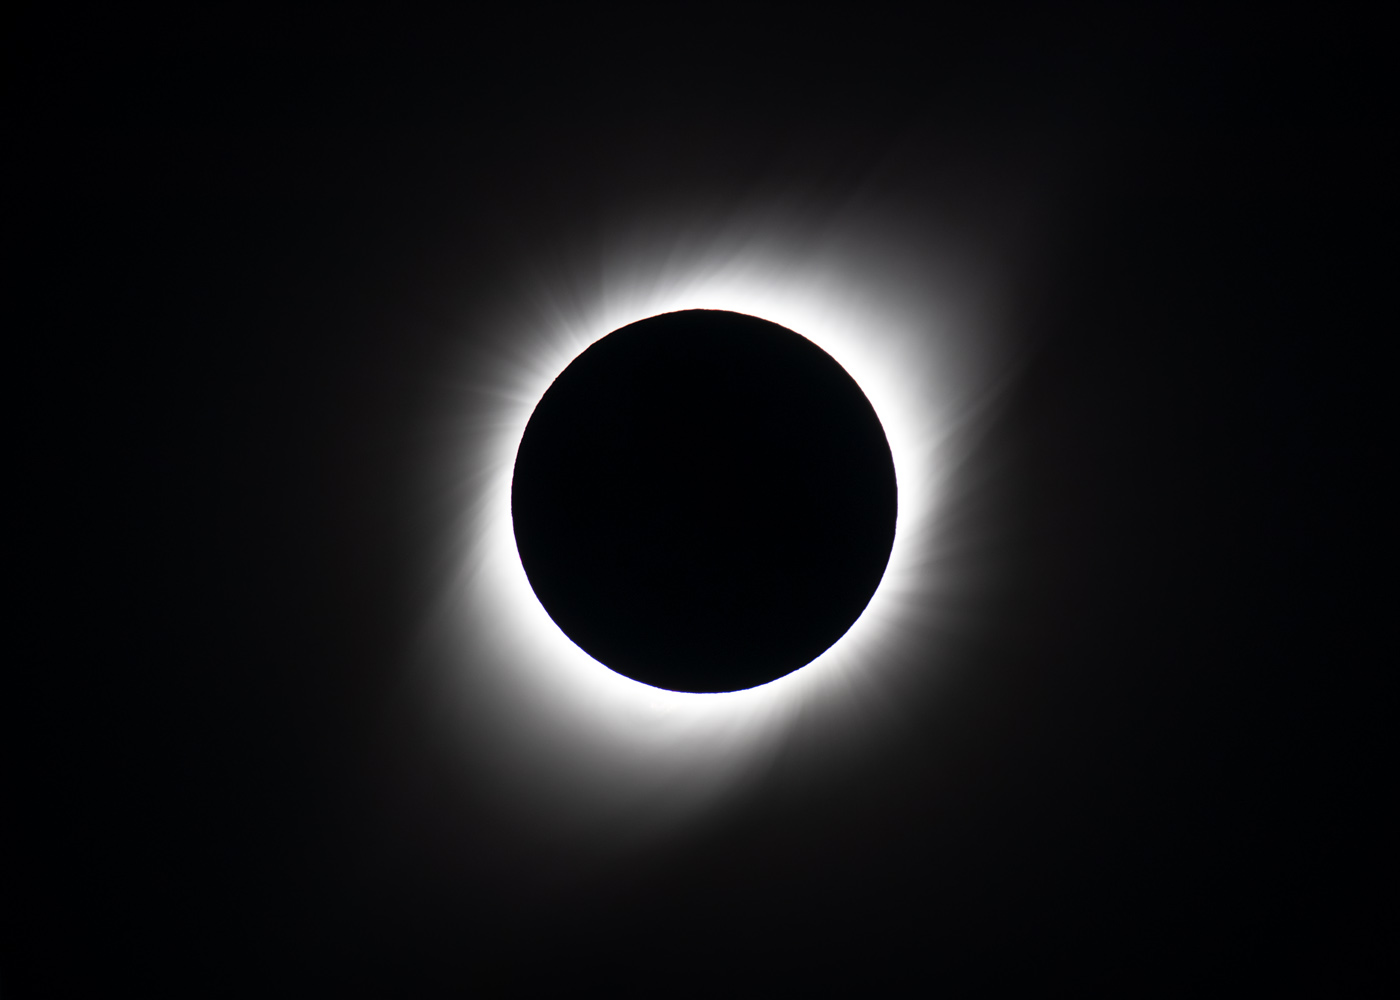 A telephoto closeup of the corona